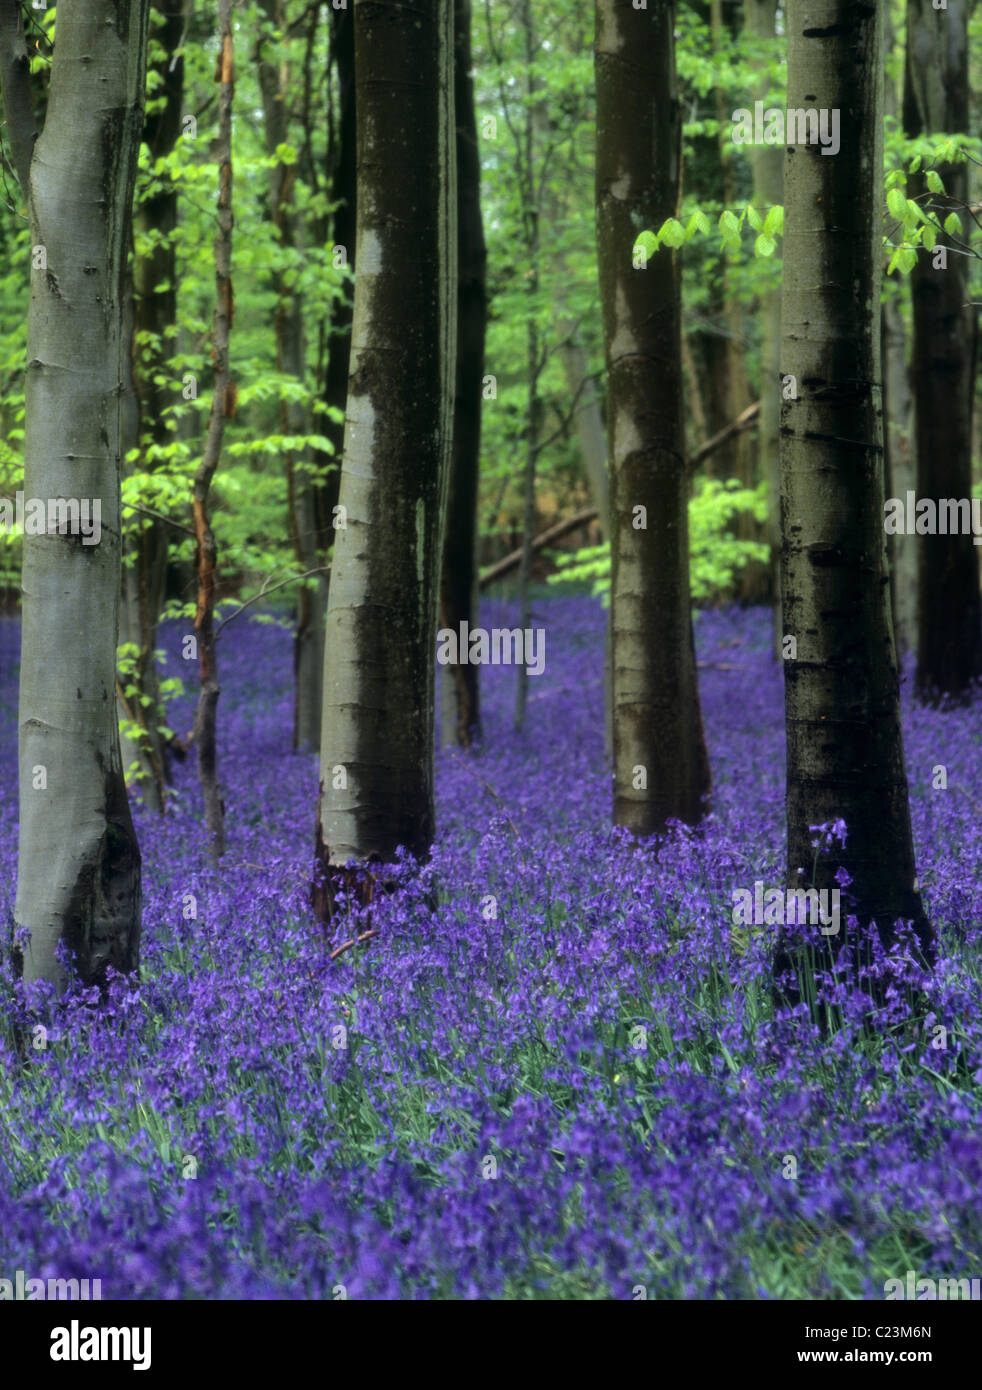 Jacinthes sauvages dans un bois de hêtre (Hyacinthoides non-scripta) & (Fagus sylvatica) après la pluie au printemps. West Stoke, Chichester, West Sussex, England, UK Banque D'Images